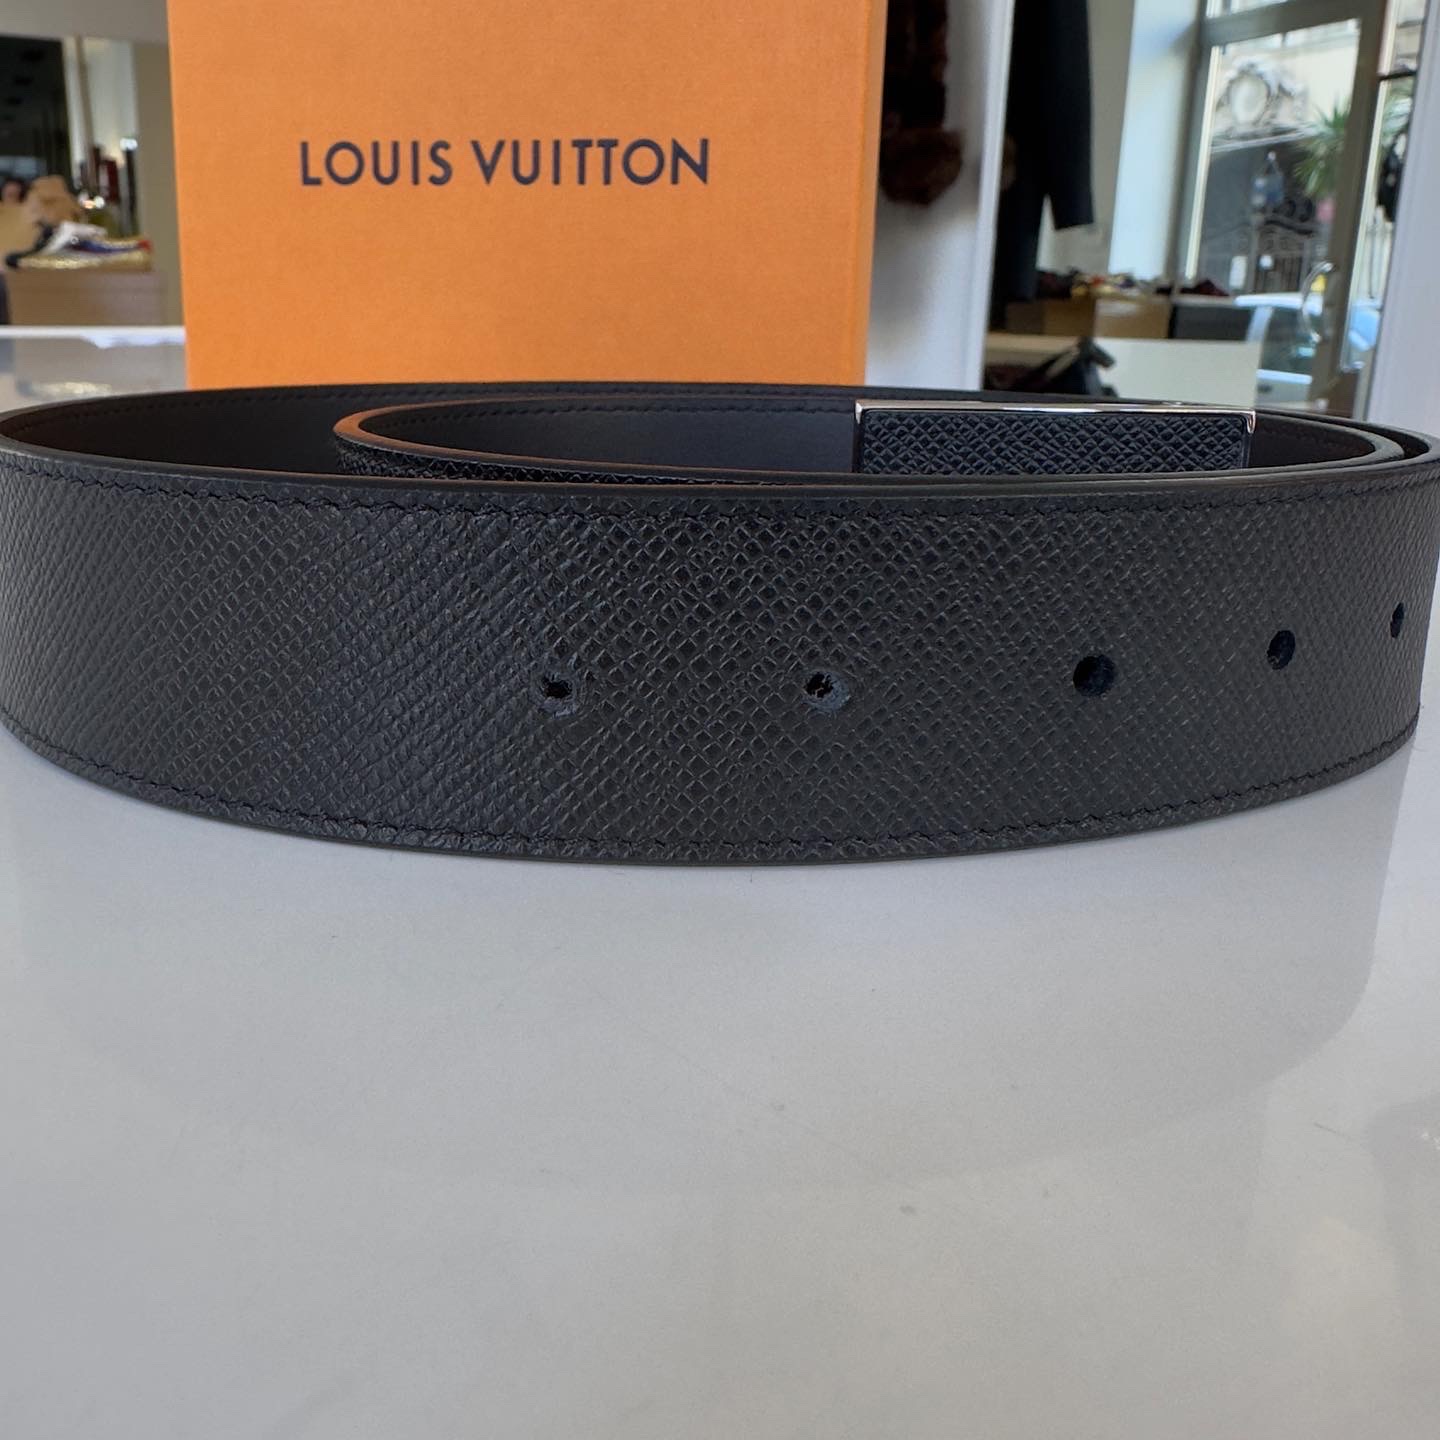  Cinture Louis Vuitton Uomo